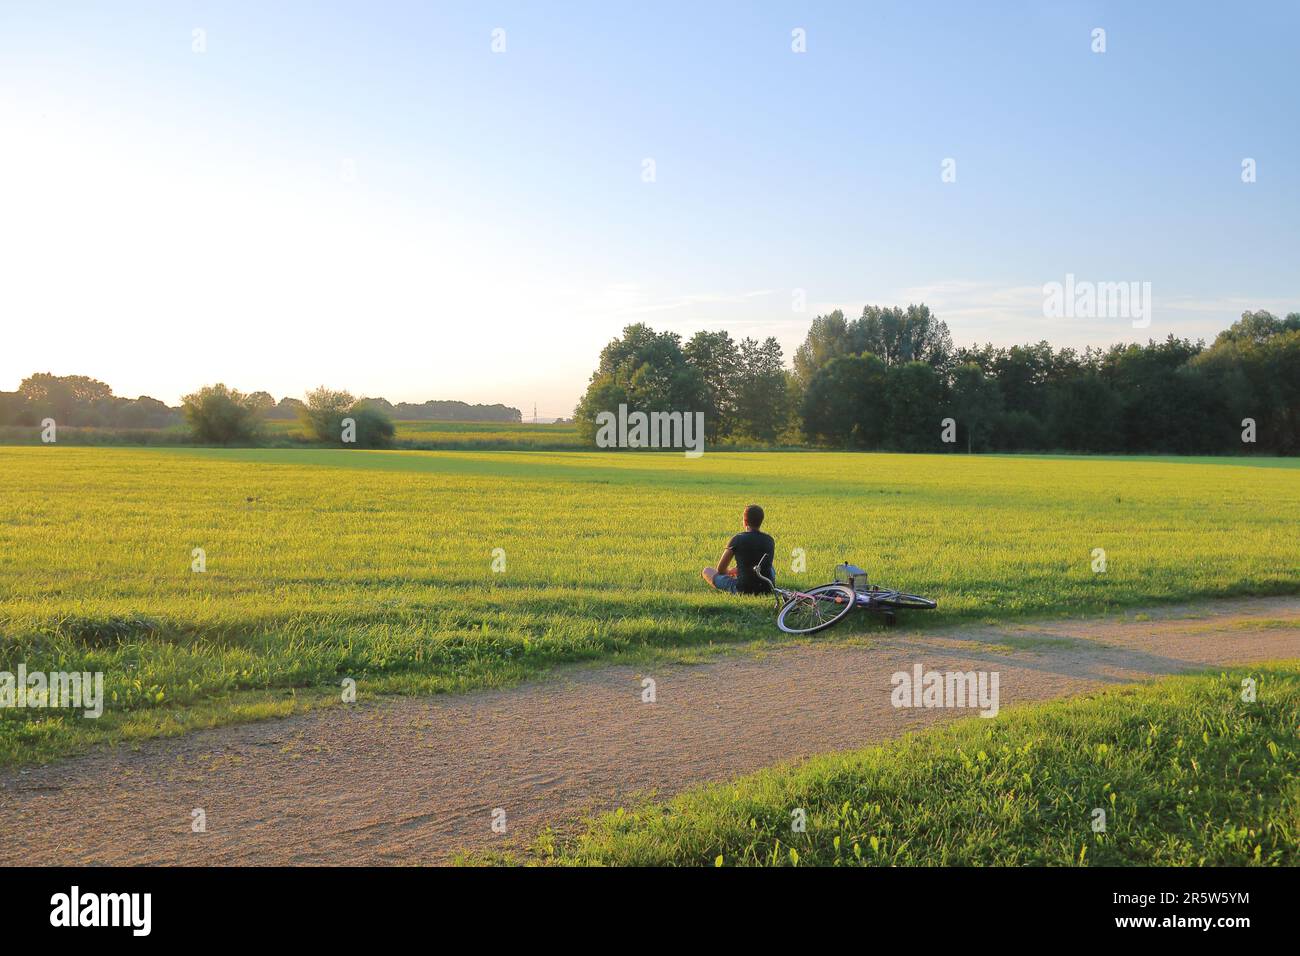 Nella foto si vede un giovane seduto sul prato e ammirando il tramonto. Bicicletta vicina visibile sdraiata sull'erba. Foto Stock